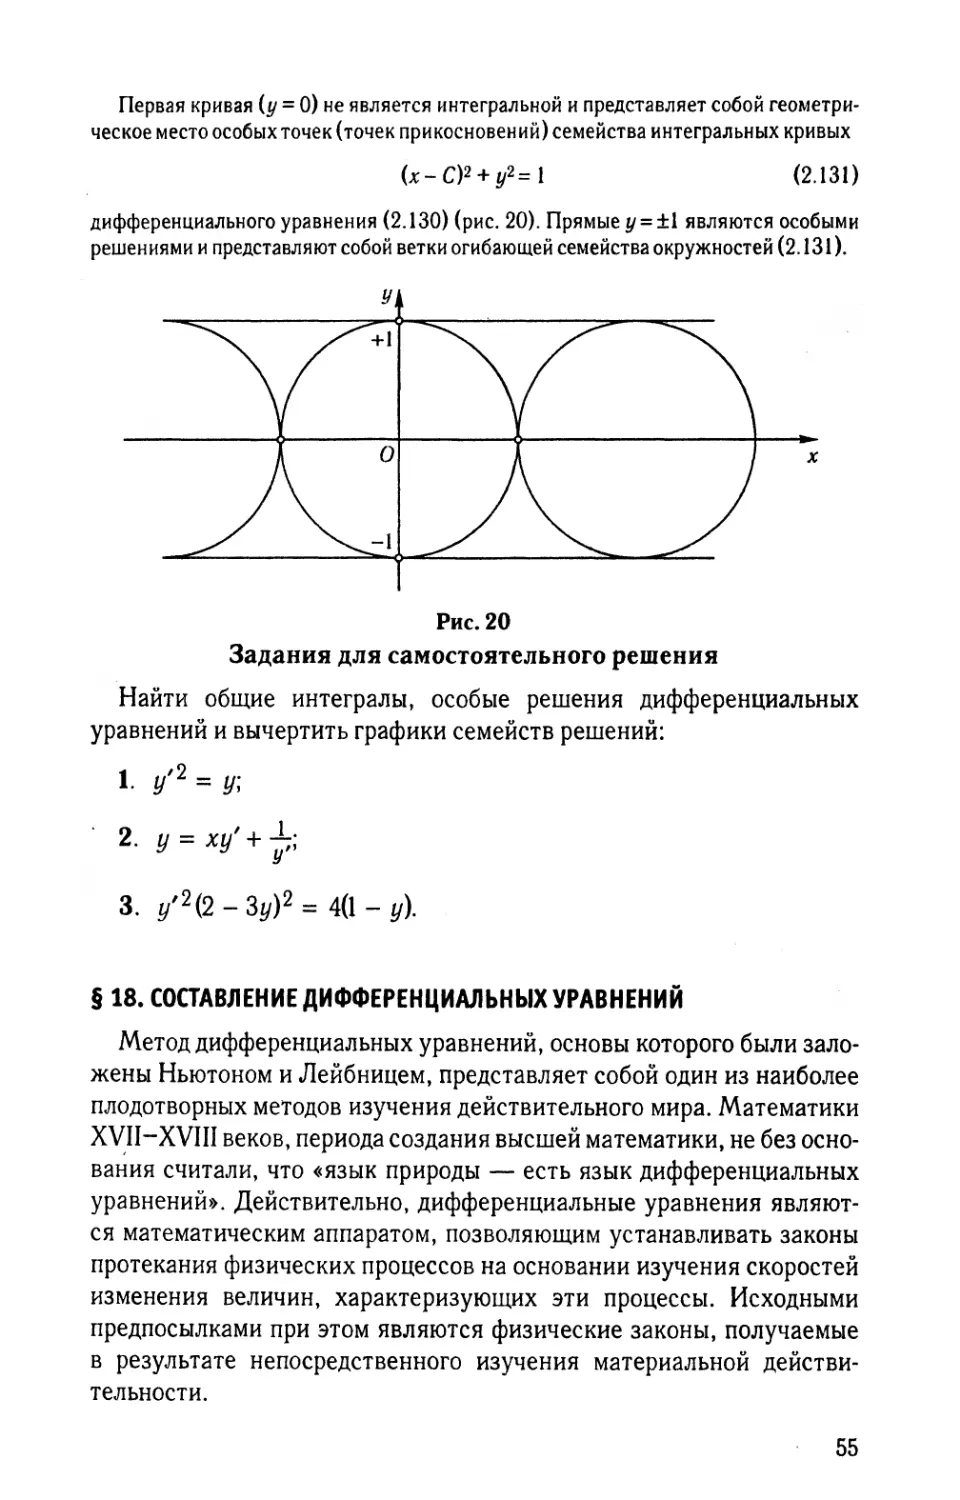 § 18. Составление дифференциальных уравнений